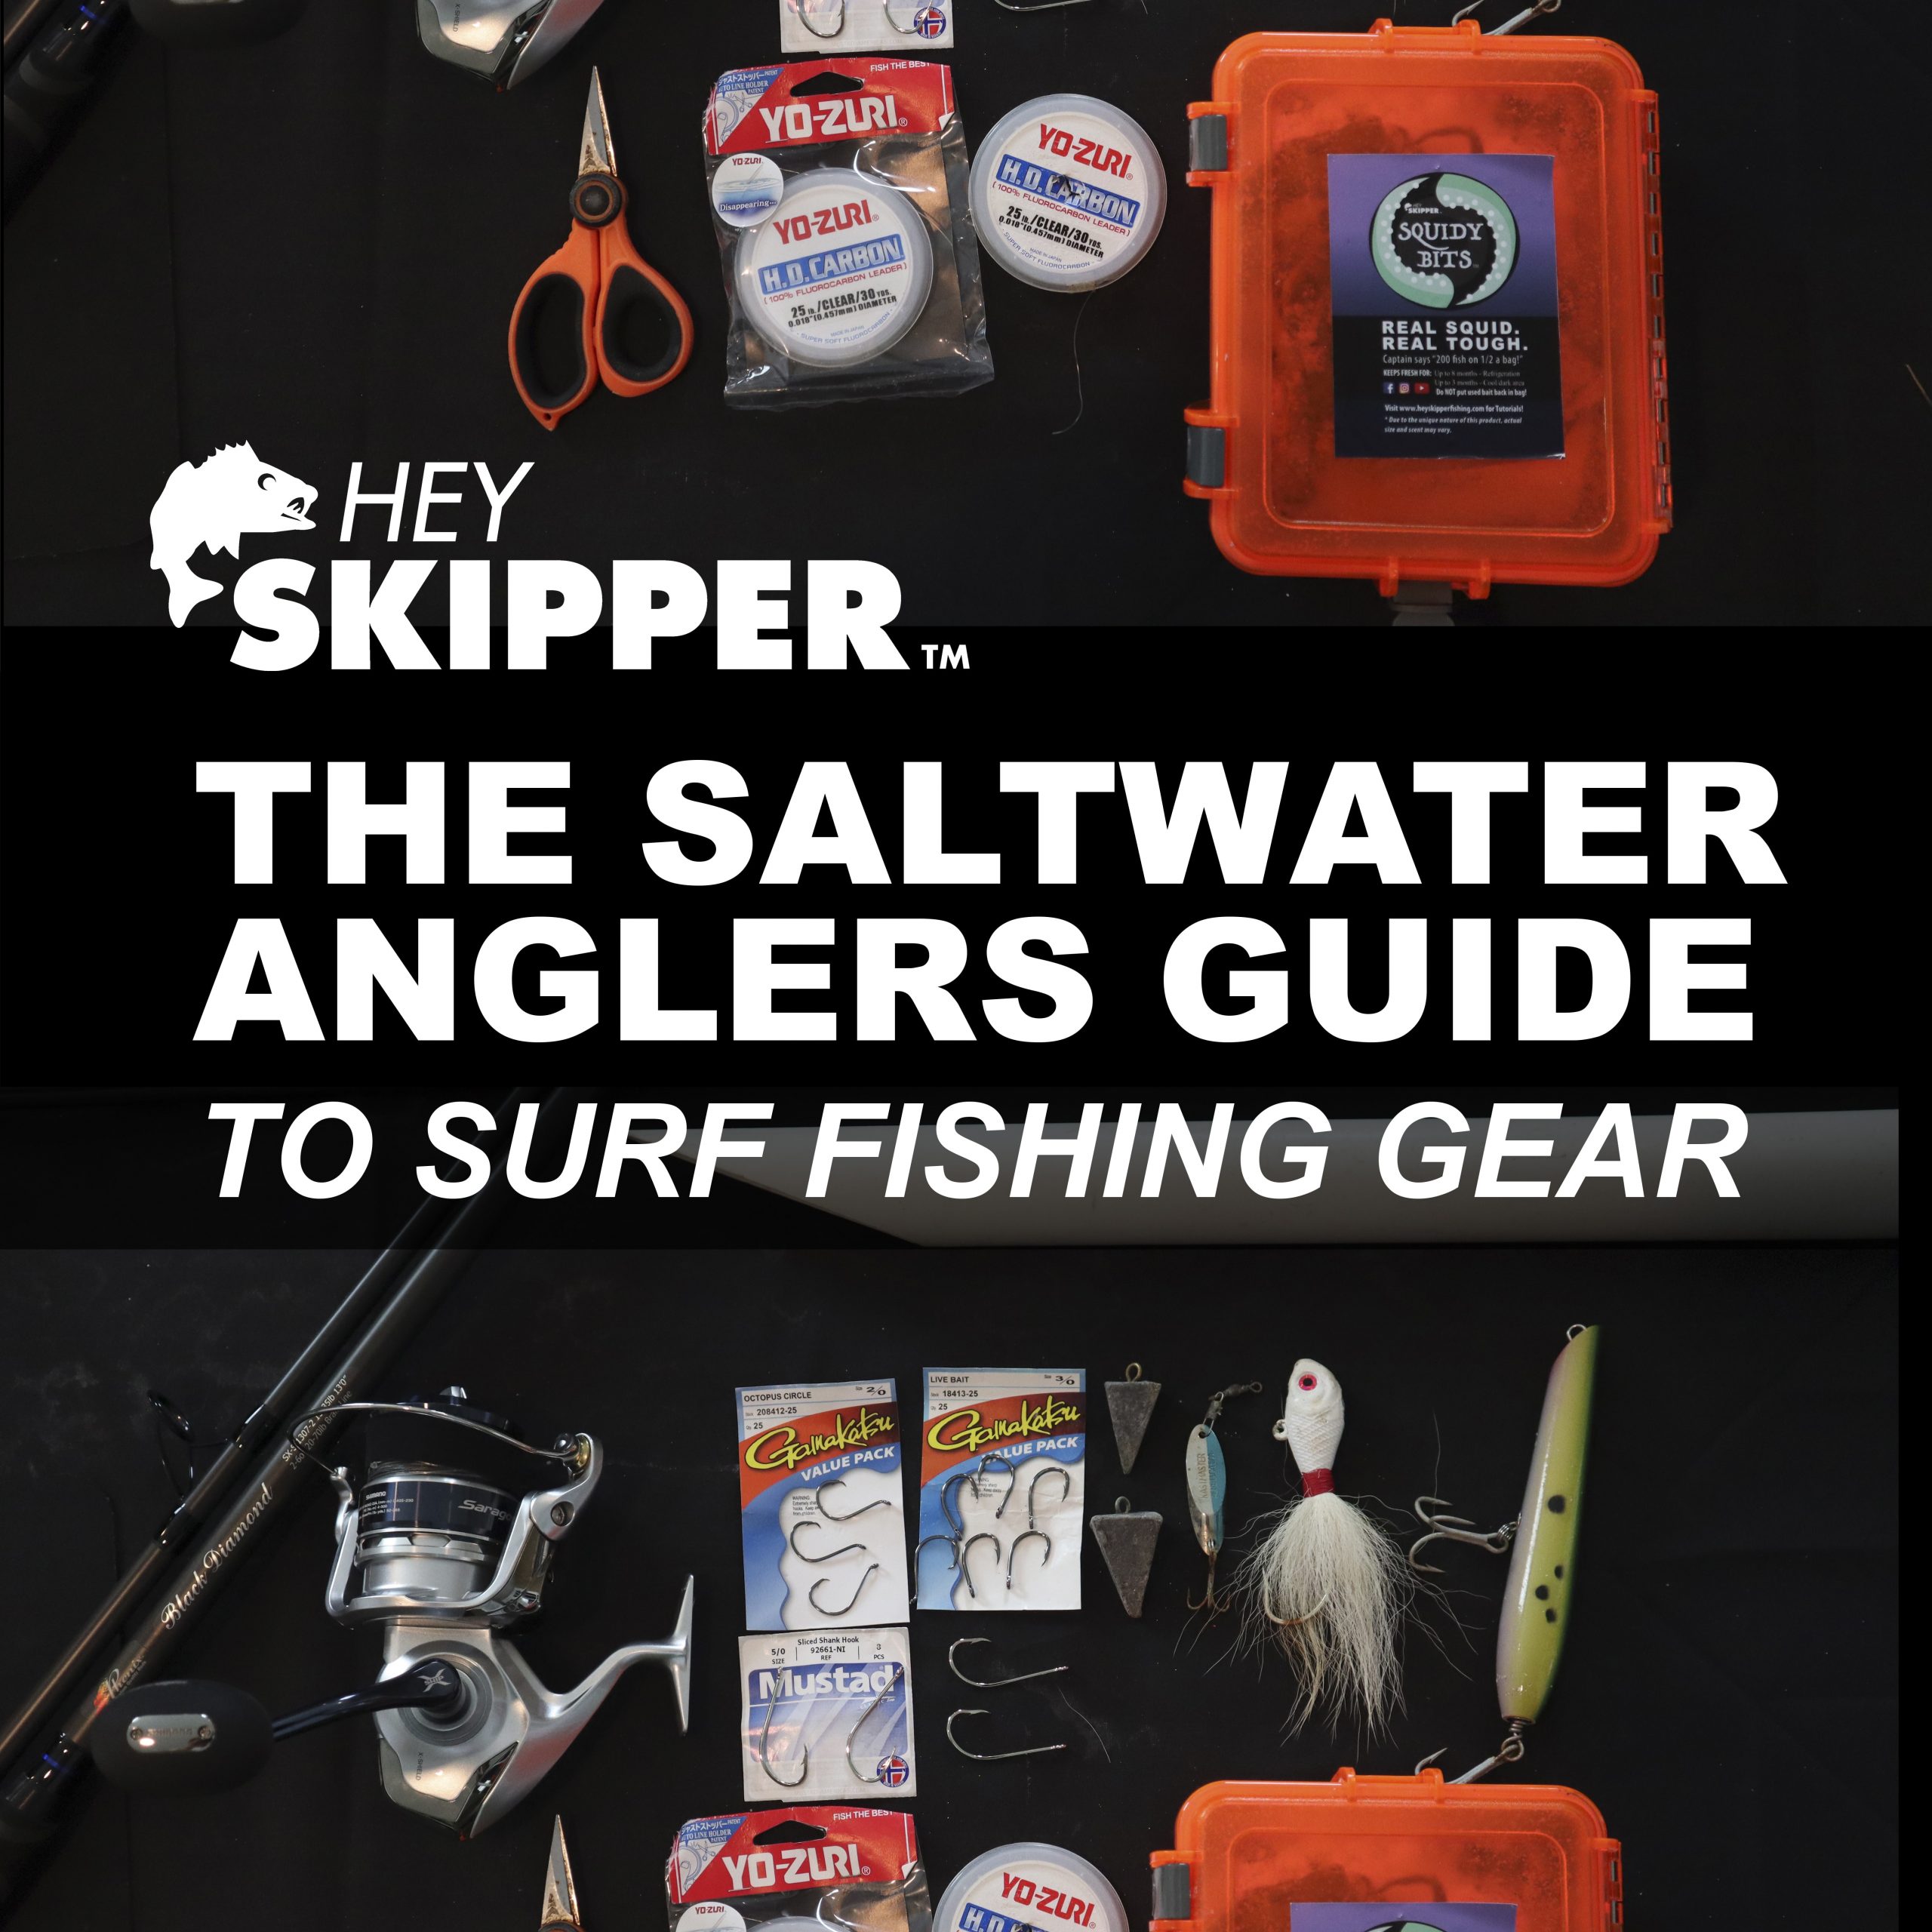 Fishing Gear, Fishing Tackle, Equipment & Supplies